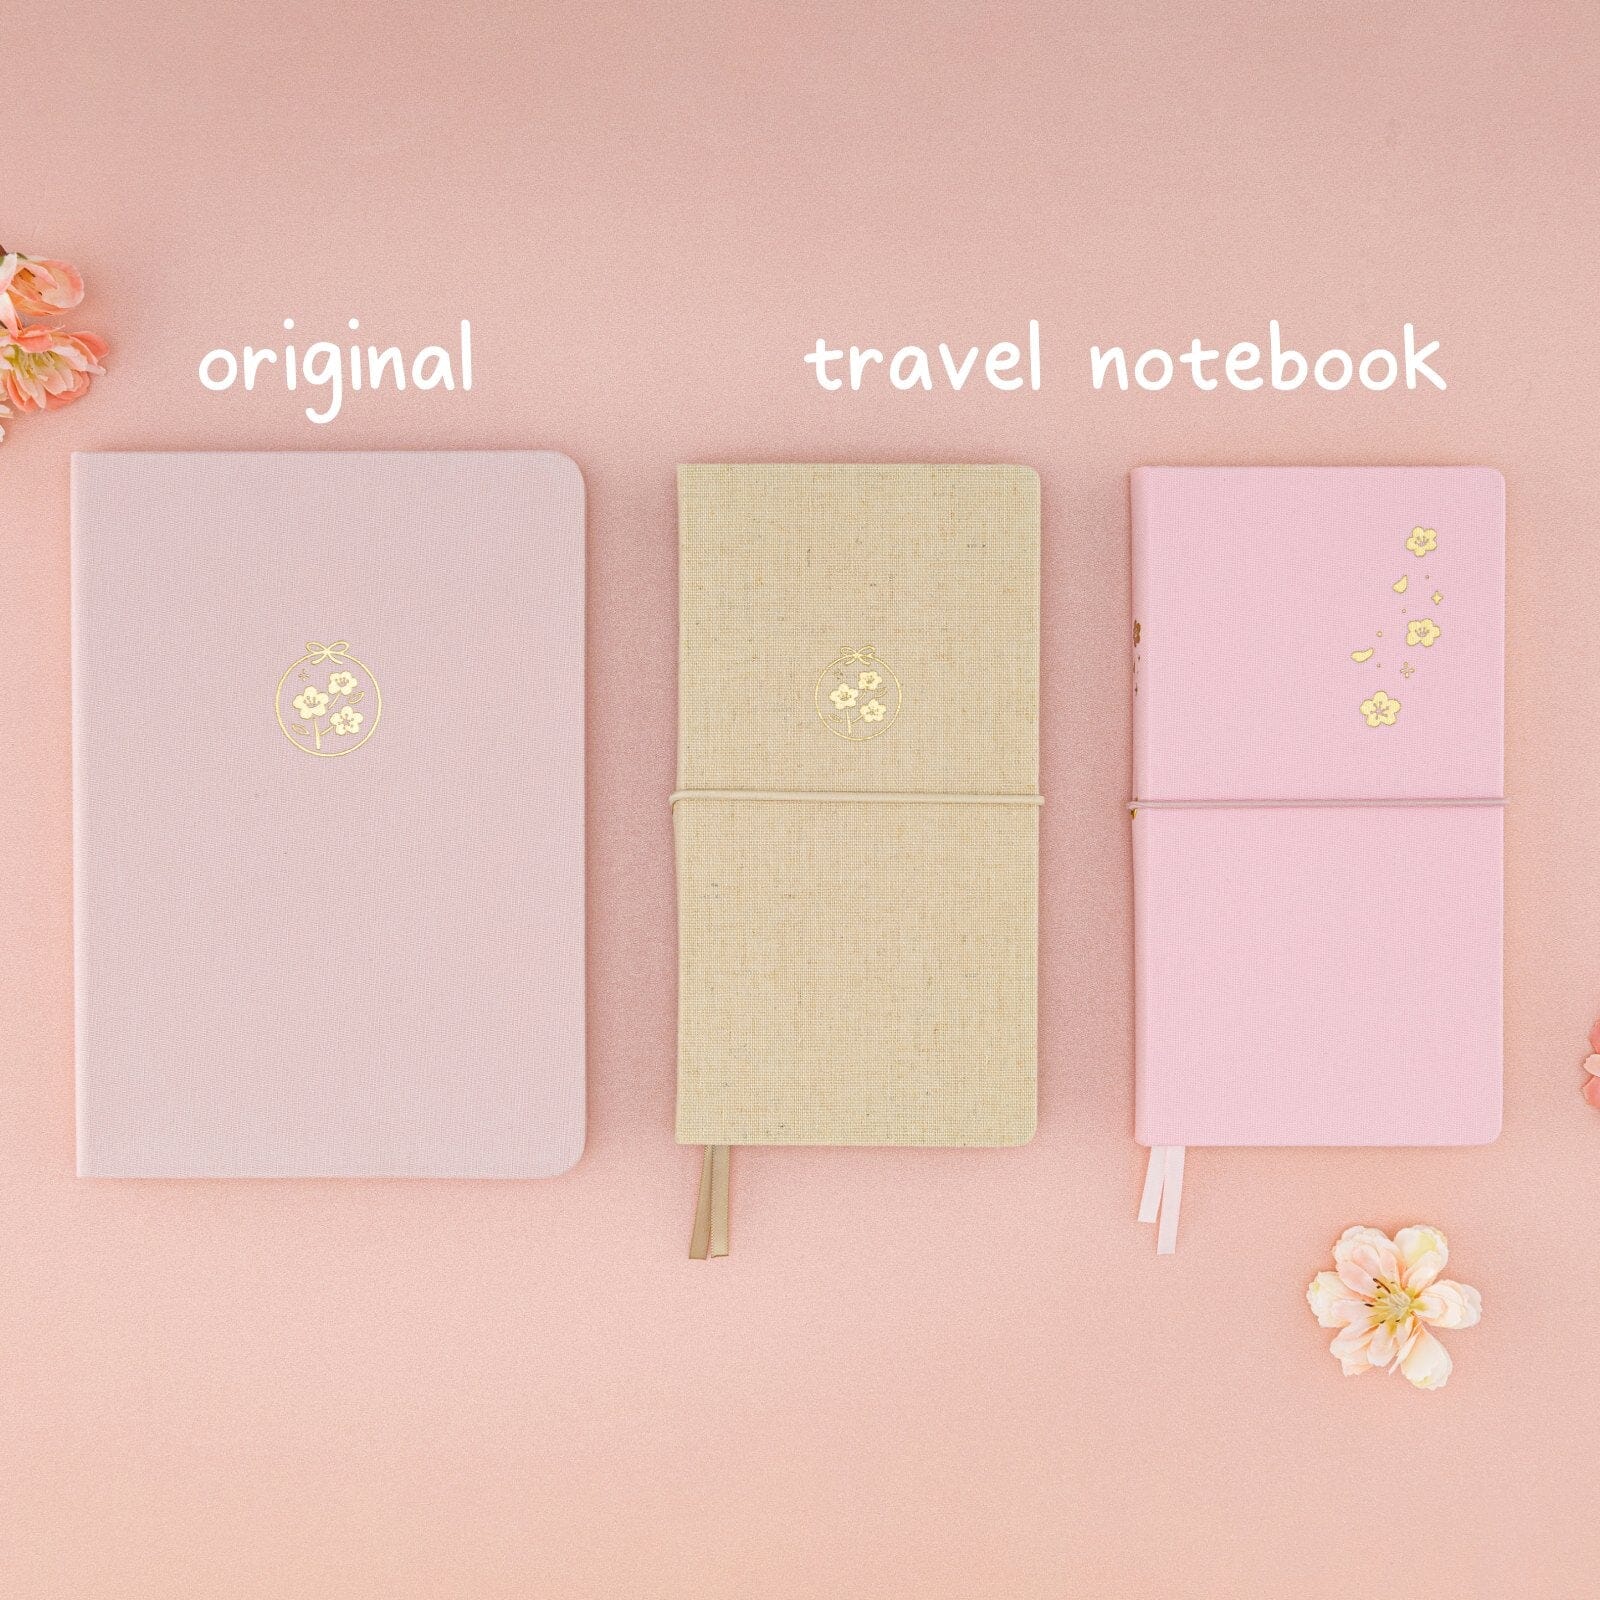 Flatlay of 3x sakura themed notebooks